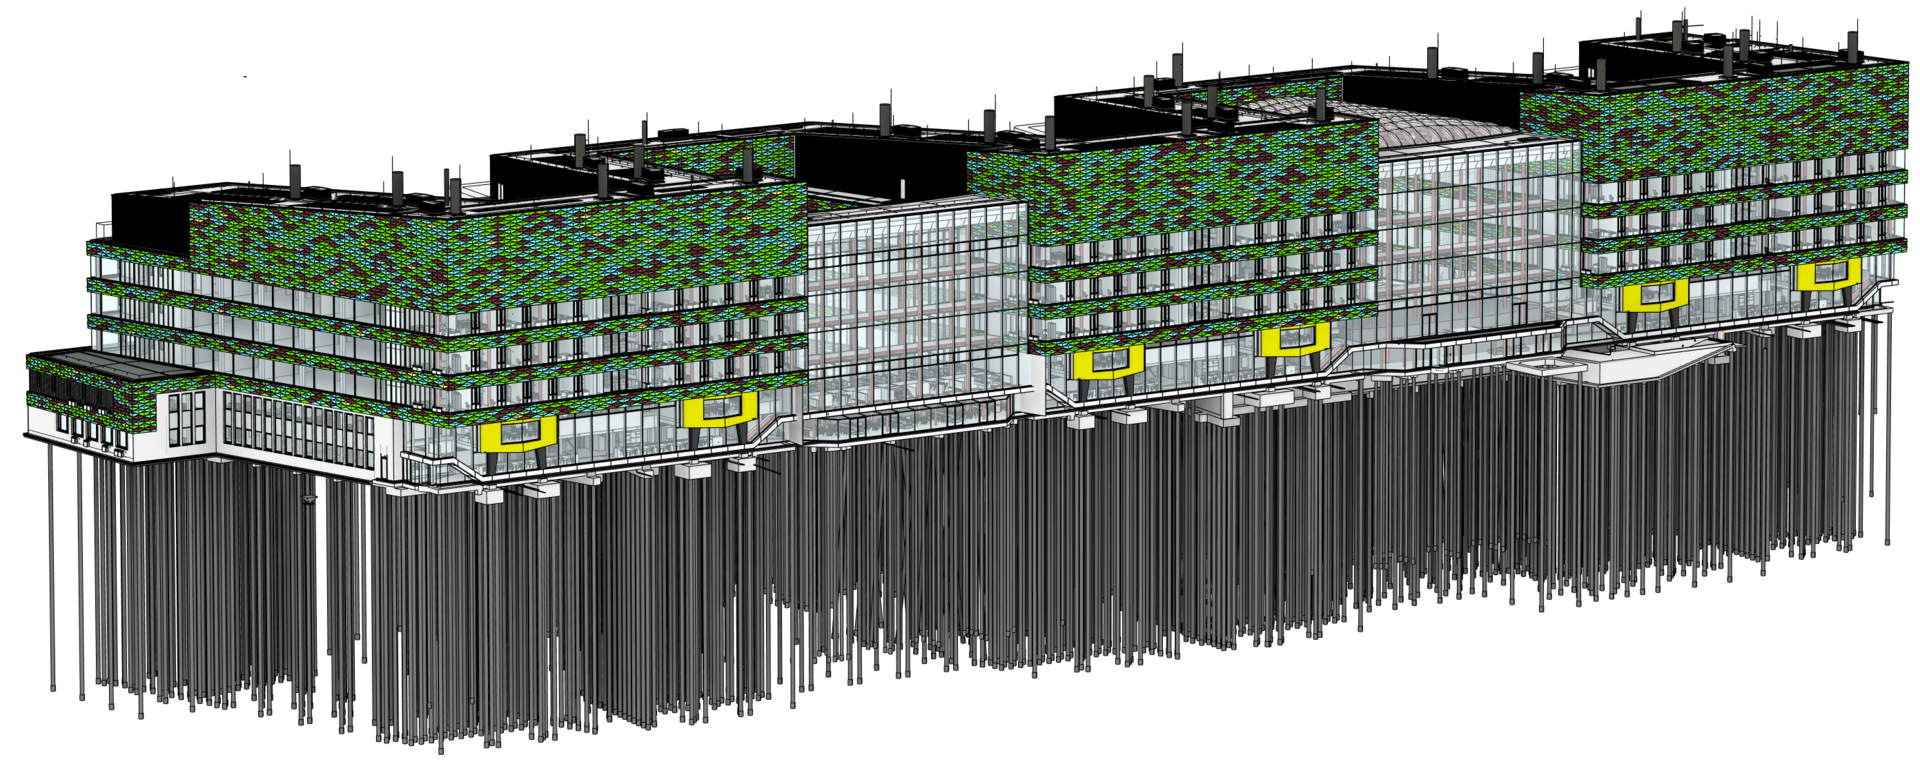 Das Feringa Building als natives 3D-Modell in einer BIM-fähigen Software